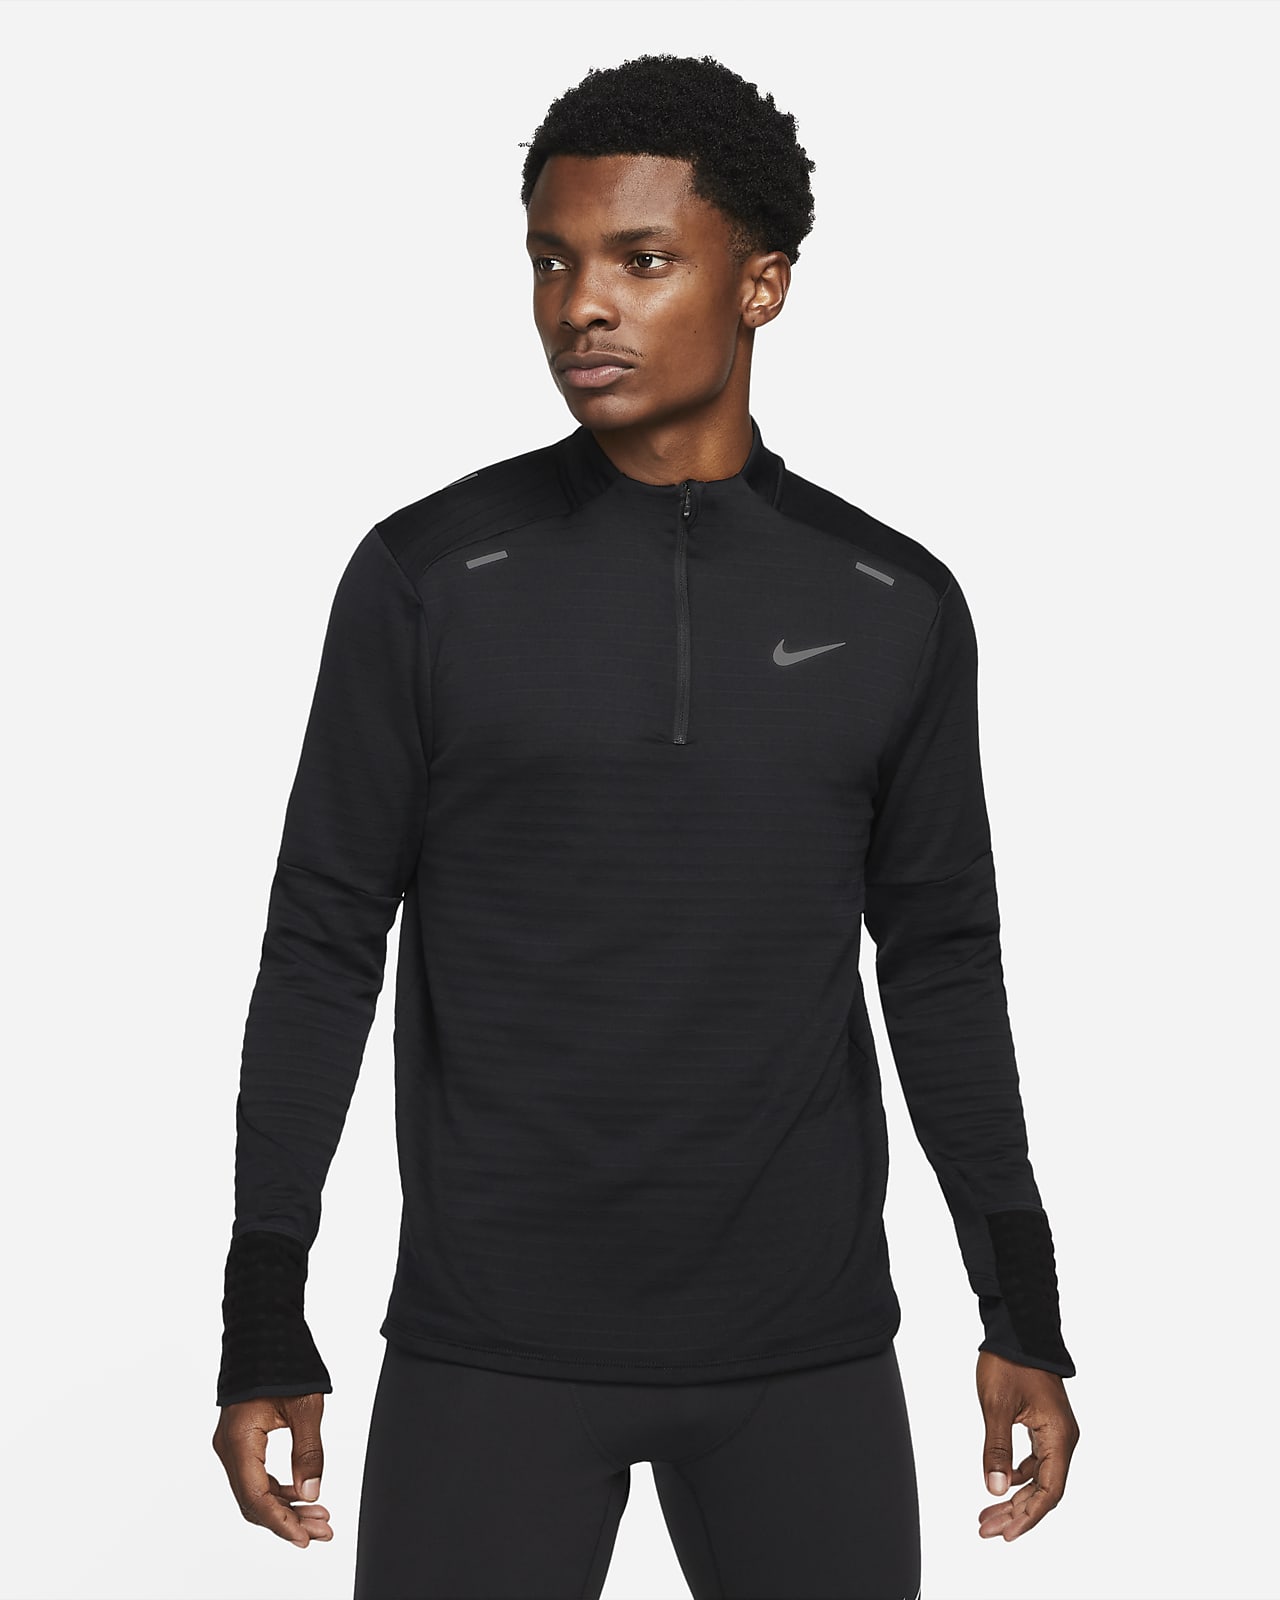 Ανδρική μπλούζα για τρέξιμο με φερμουάρ στο 1/4 του μήκους Nike Therma-FIT Repel